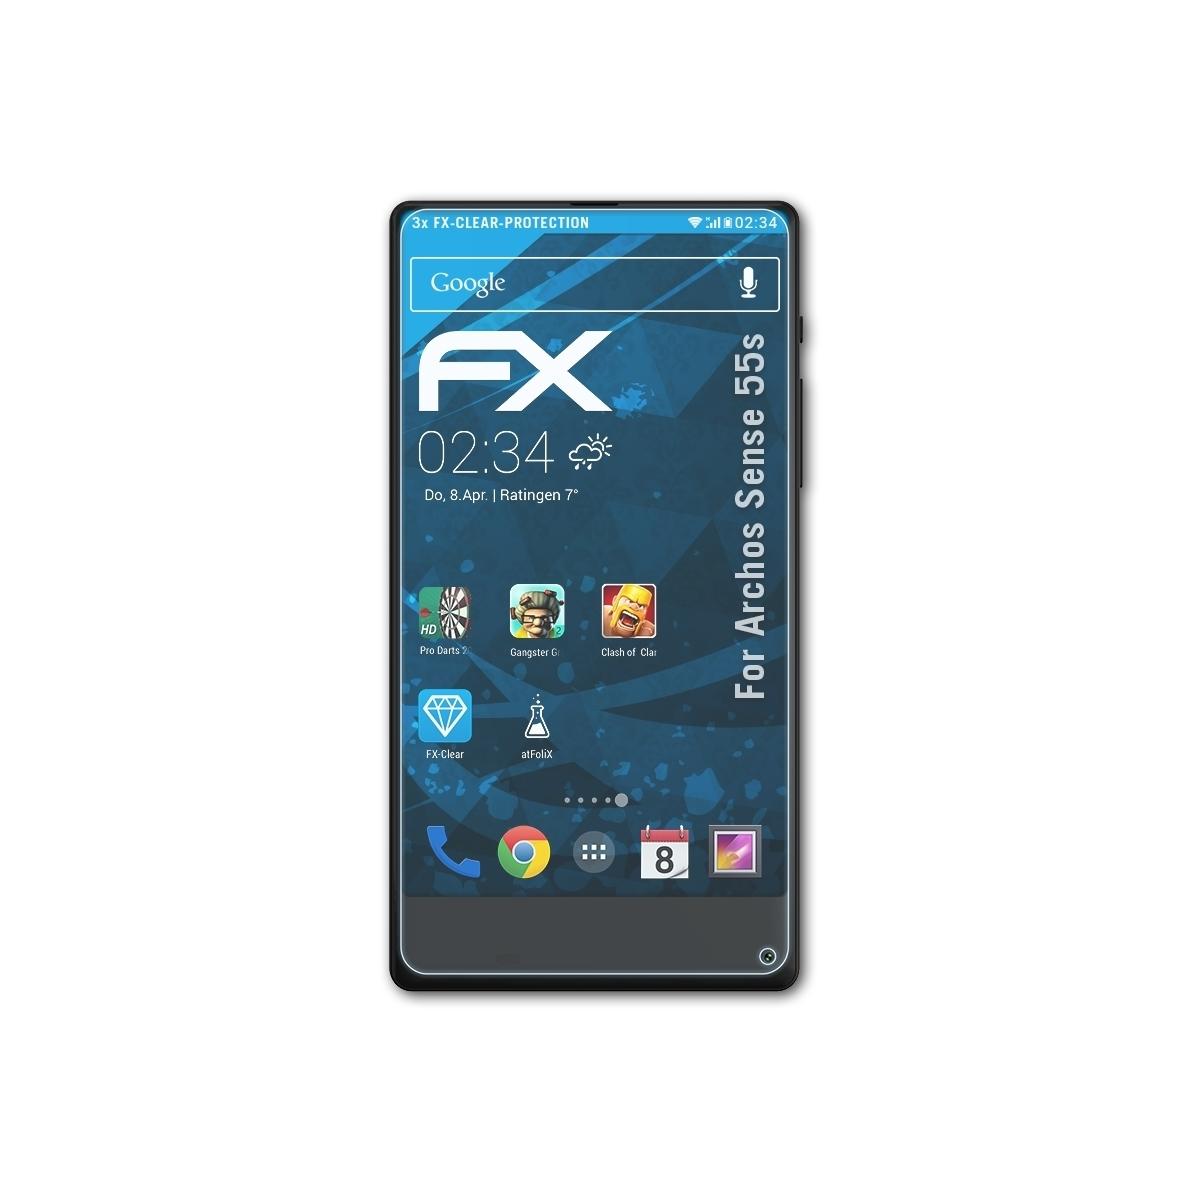 ATFOLIX 3x FX-Clear Archos Displayschutz(für 55s) Sense